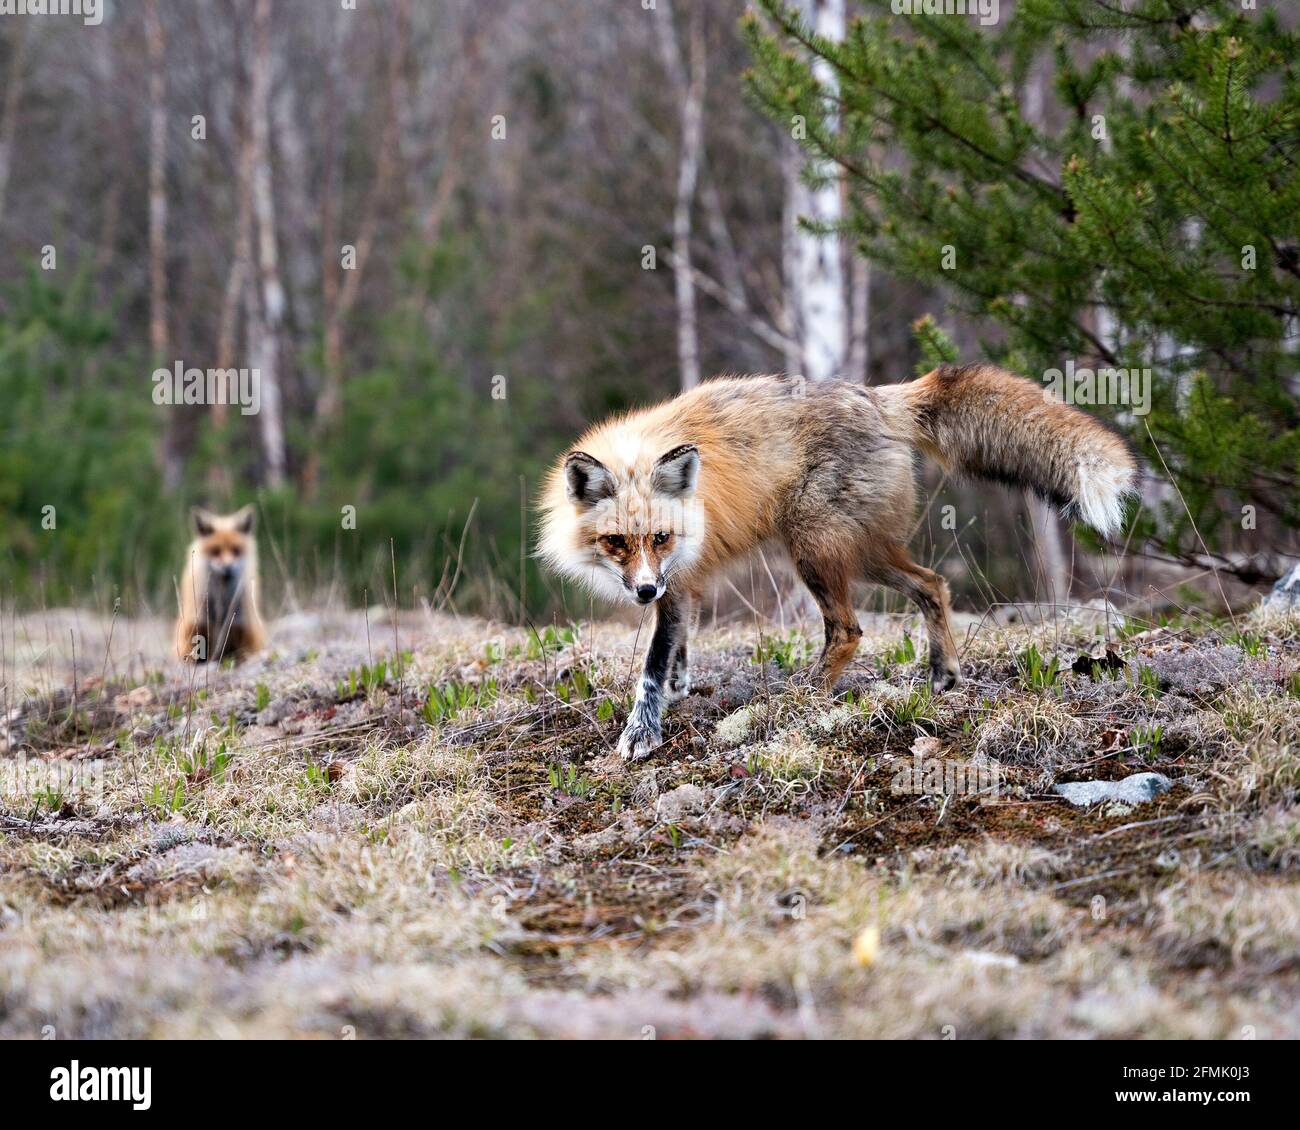 Vista ravvicinata del profilo Red Fox in piedi su muschio con una volpe sfocata e sfondo della foresta nel suo ambiente e habitat. Immagine FOX. Immagine. Verticale. Foto Stock